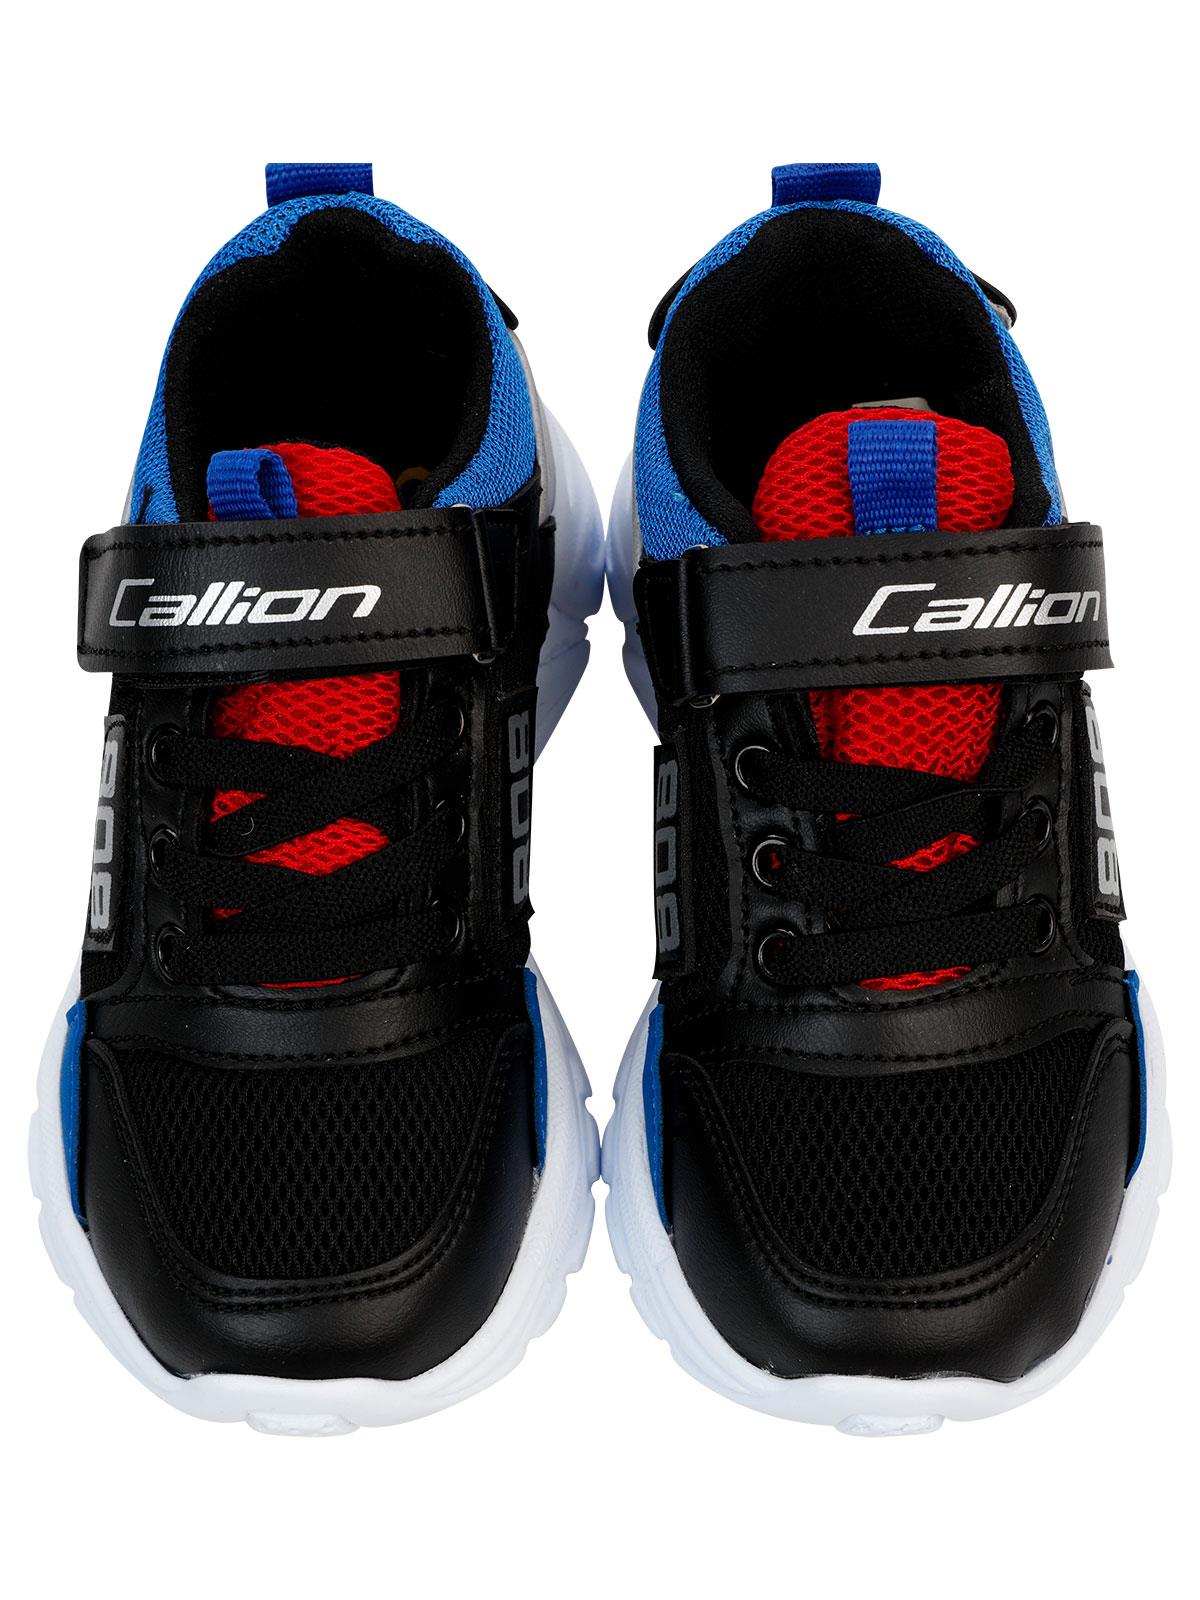 Callion Erkek Çocuk Spor Ayakkabı 31-35 Numara Siyah